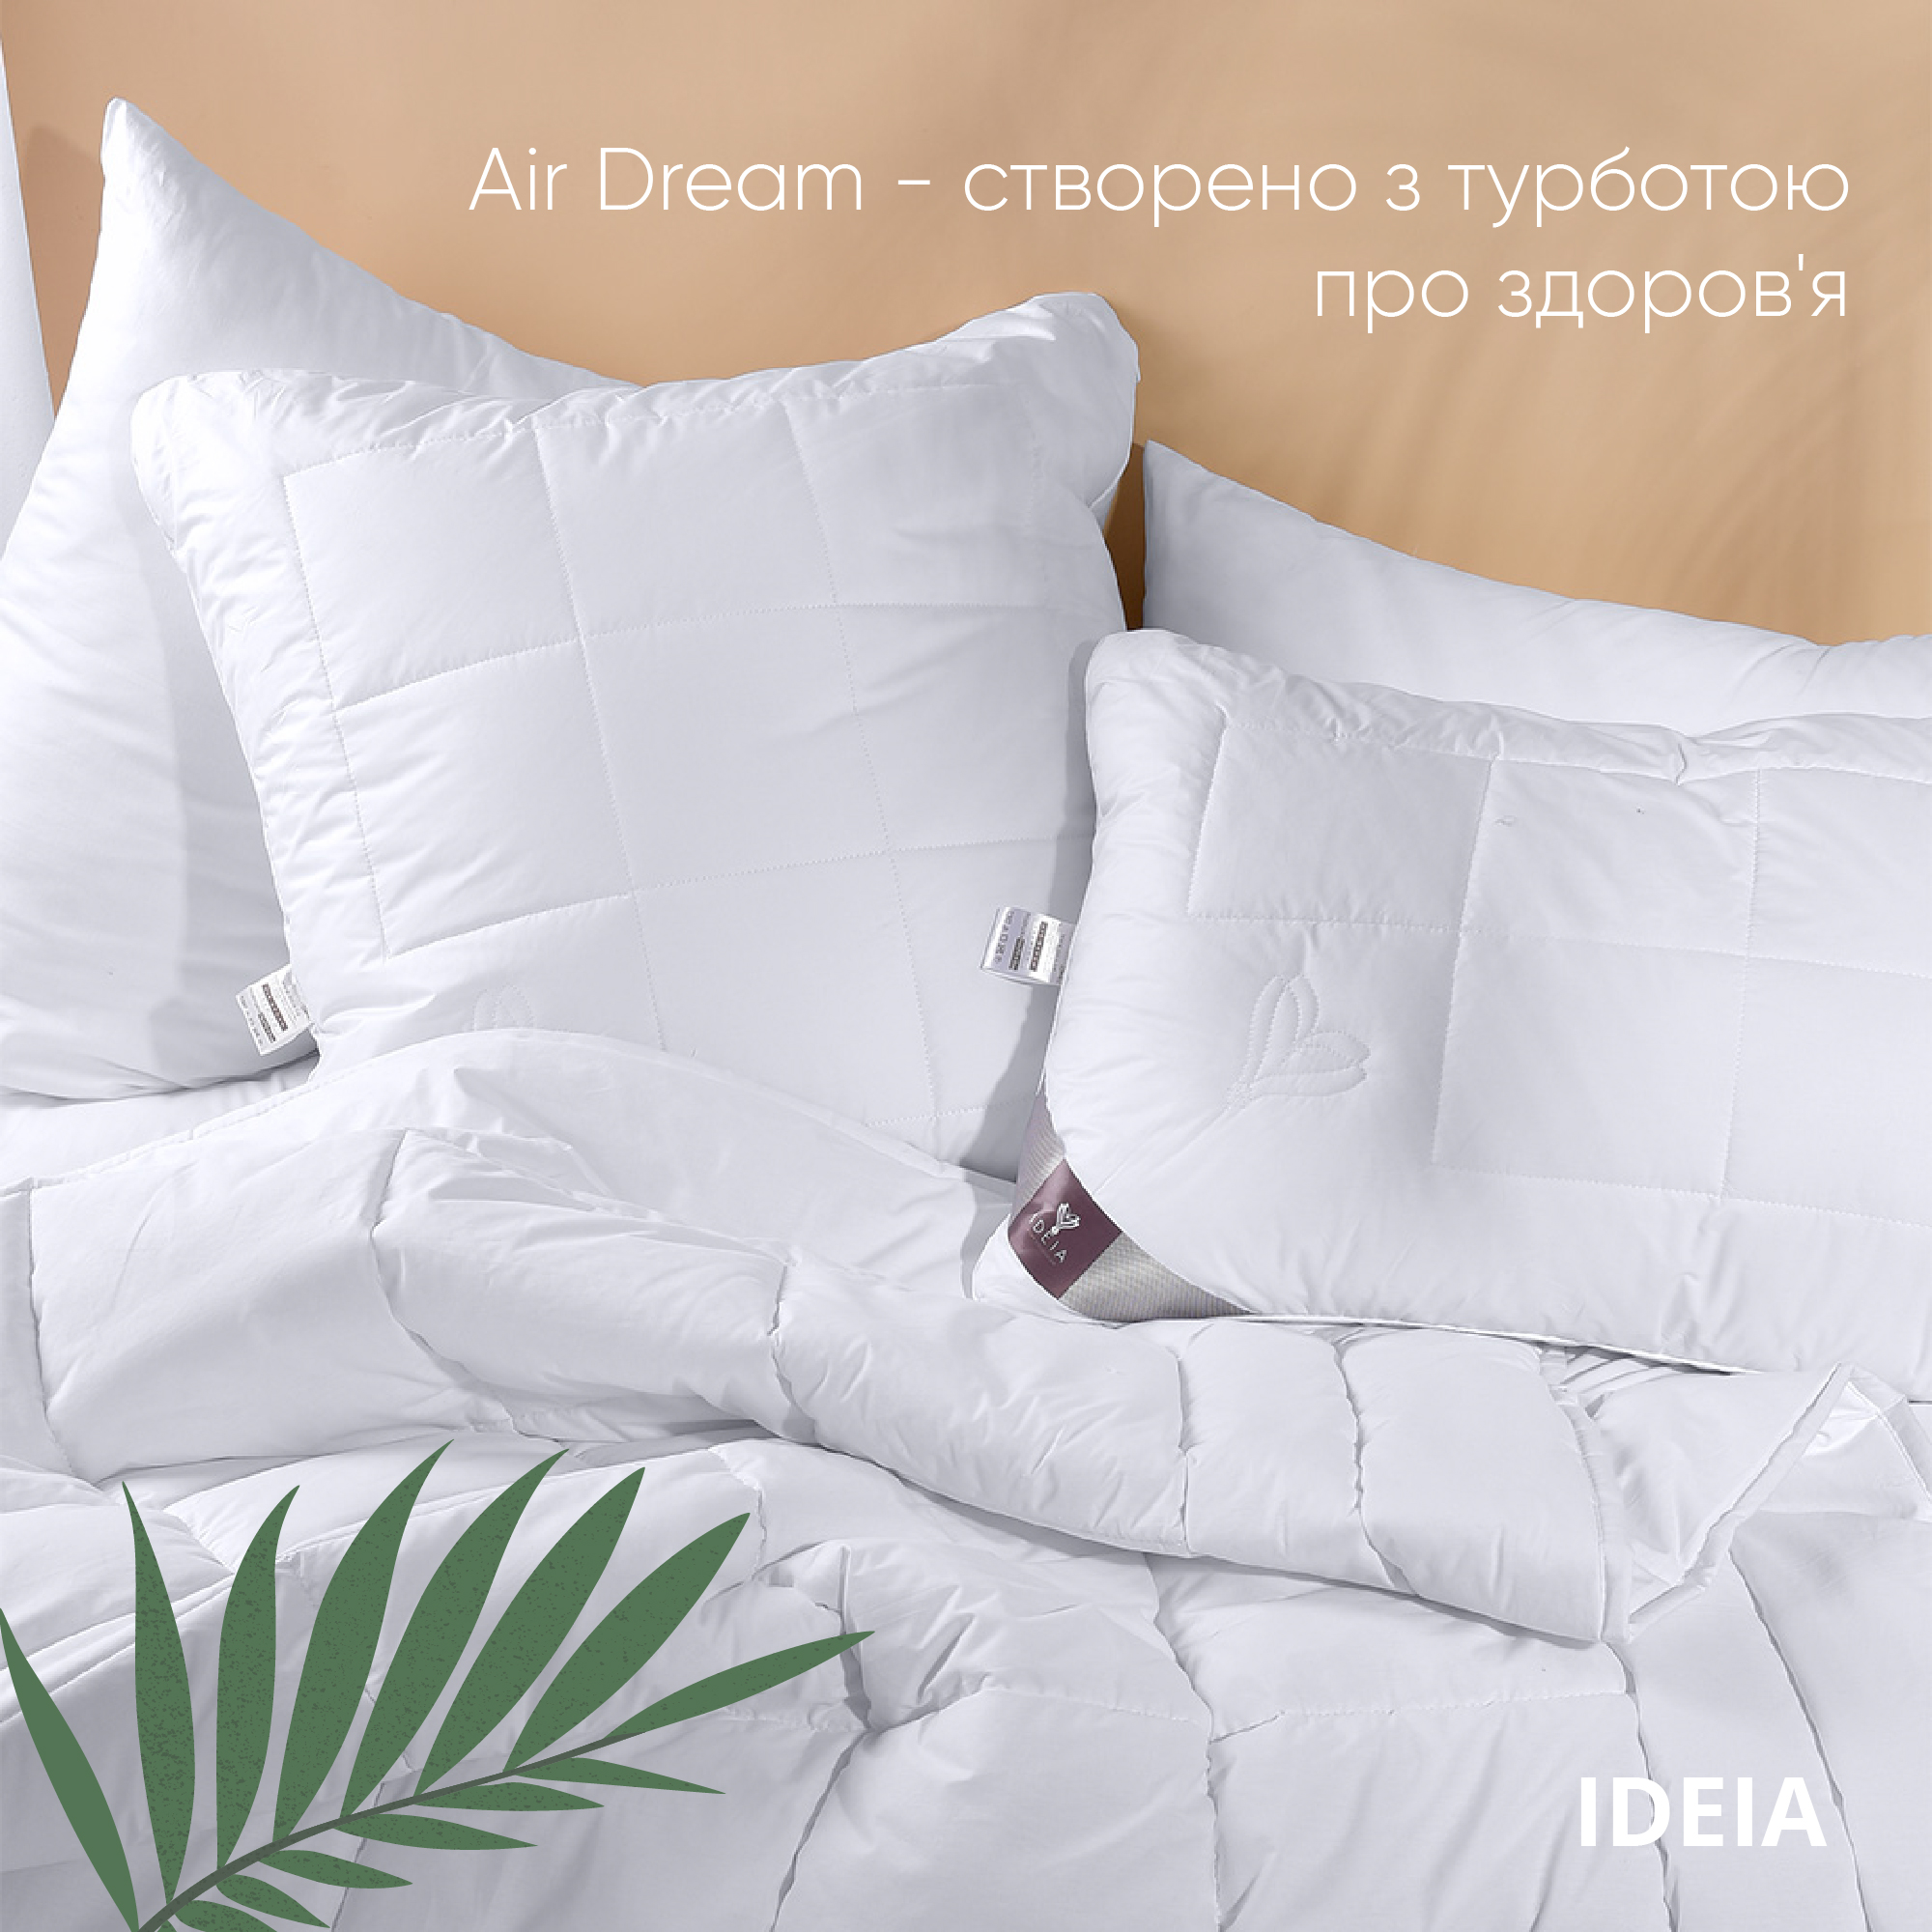 Ковдра Ideia Air Dream Premium літня, 210х175, білий (8-11697) - фото 6